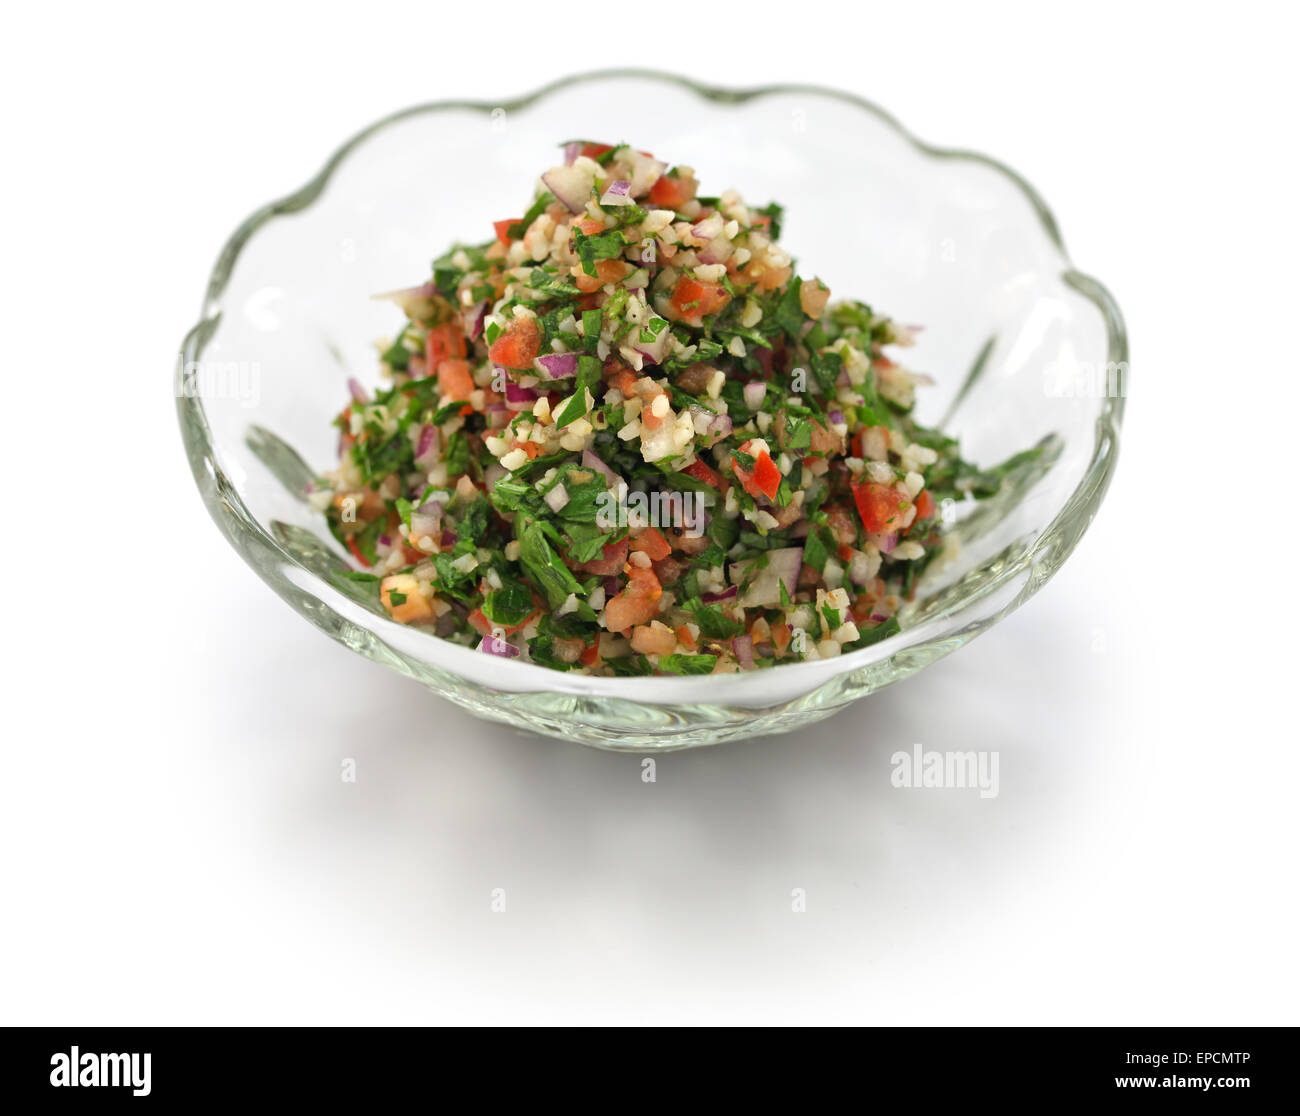 Le taboulé taboulé, salade, persil, une cuisine du Moyen-Orient Banque D'Images